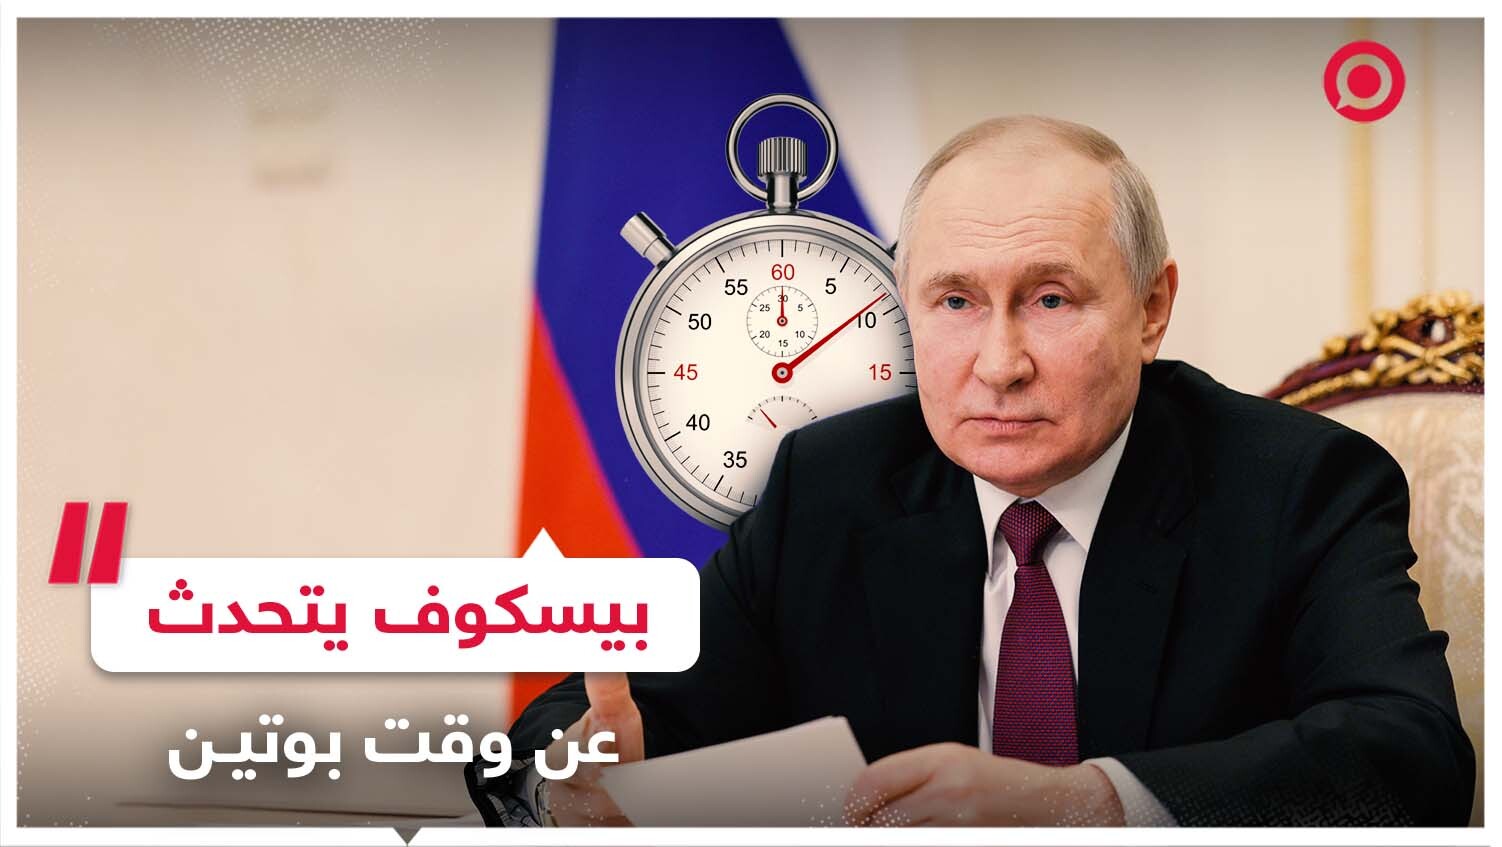 بيسكوف يتحدث عن وقت الرئيس بوتين